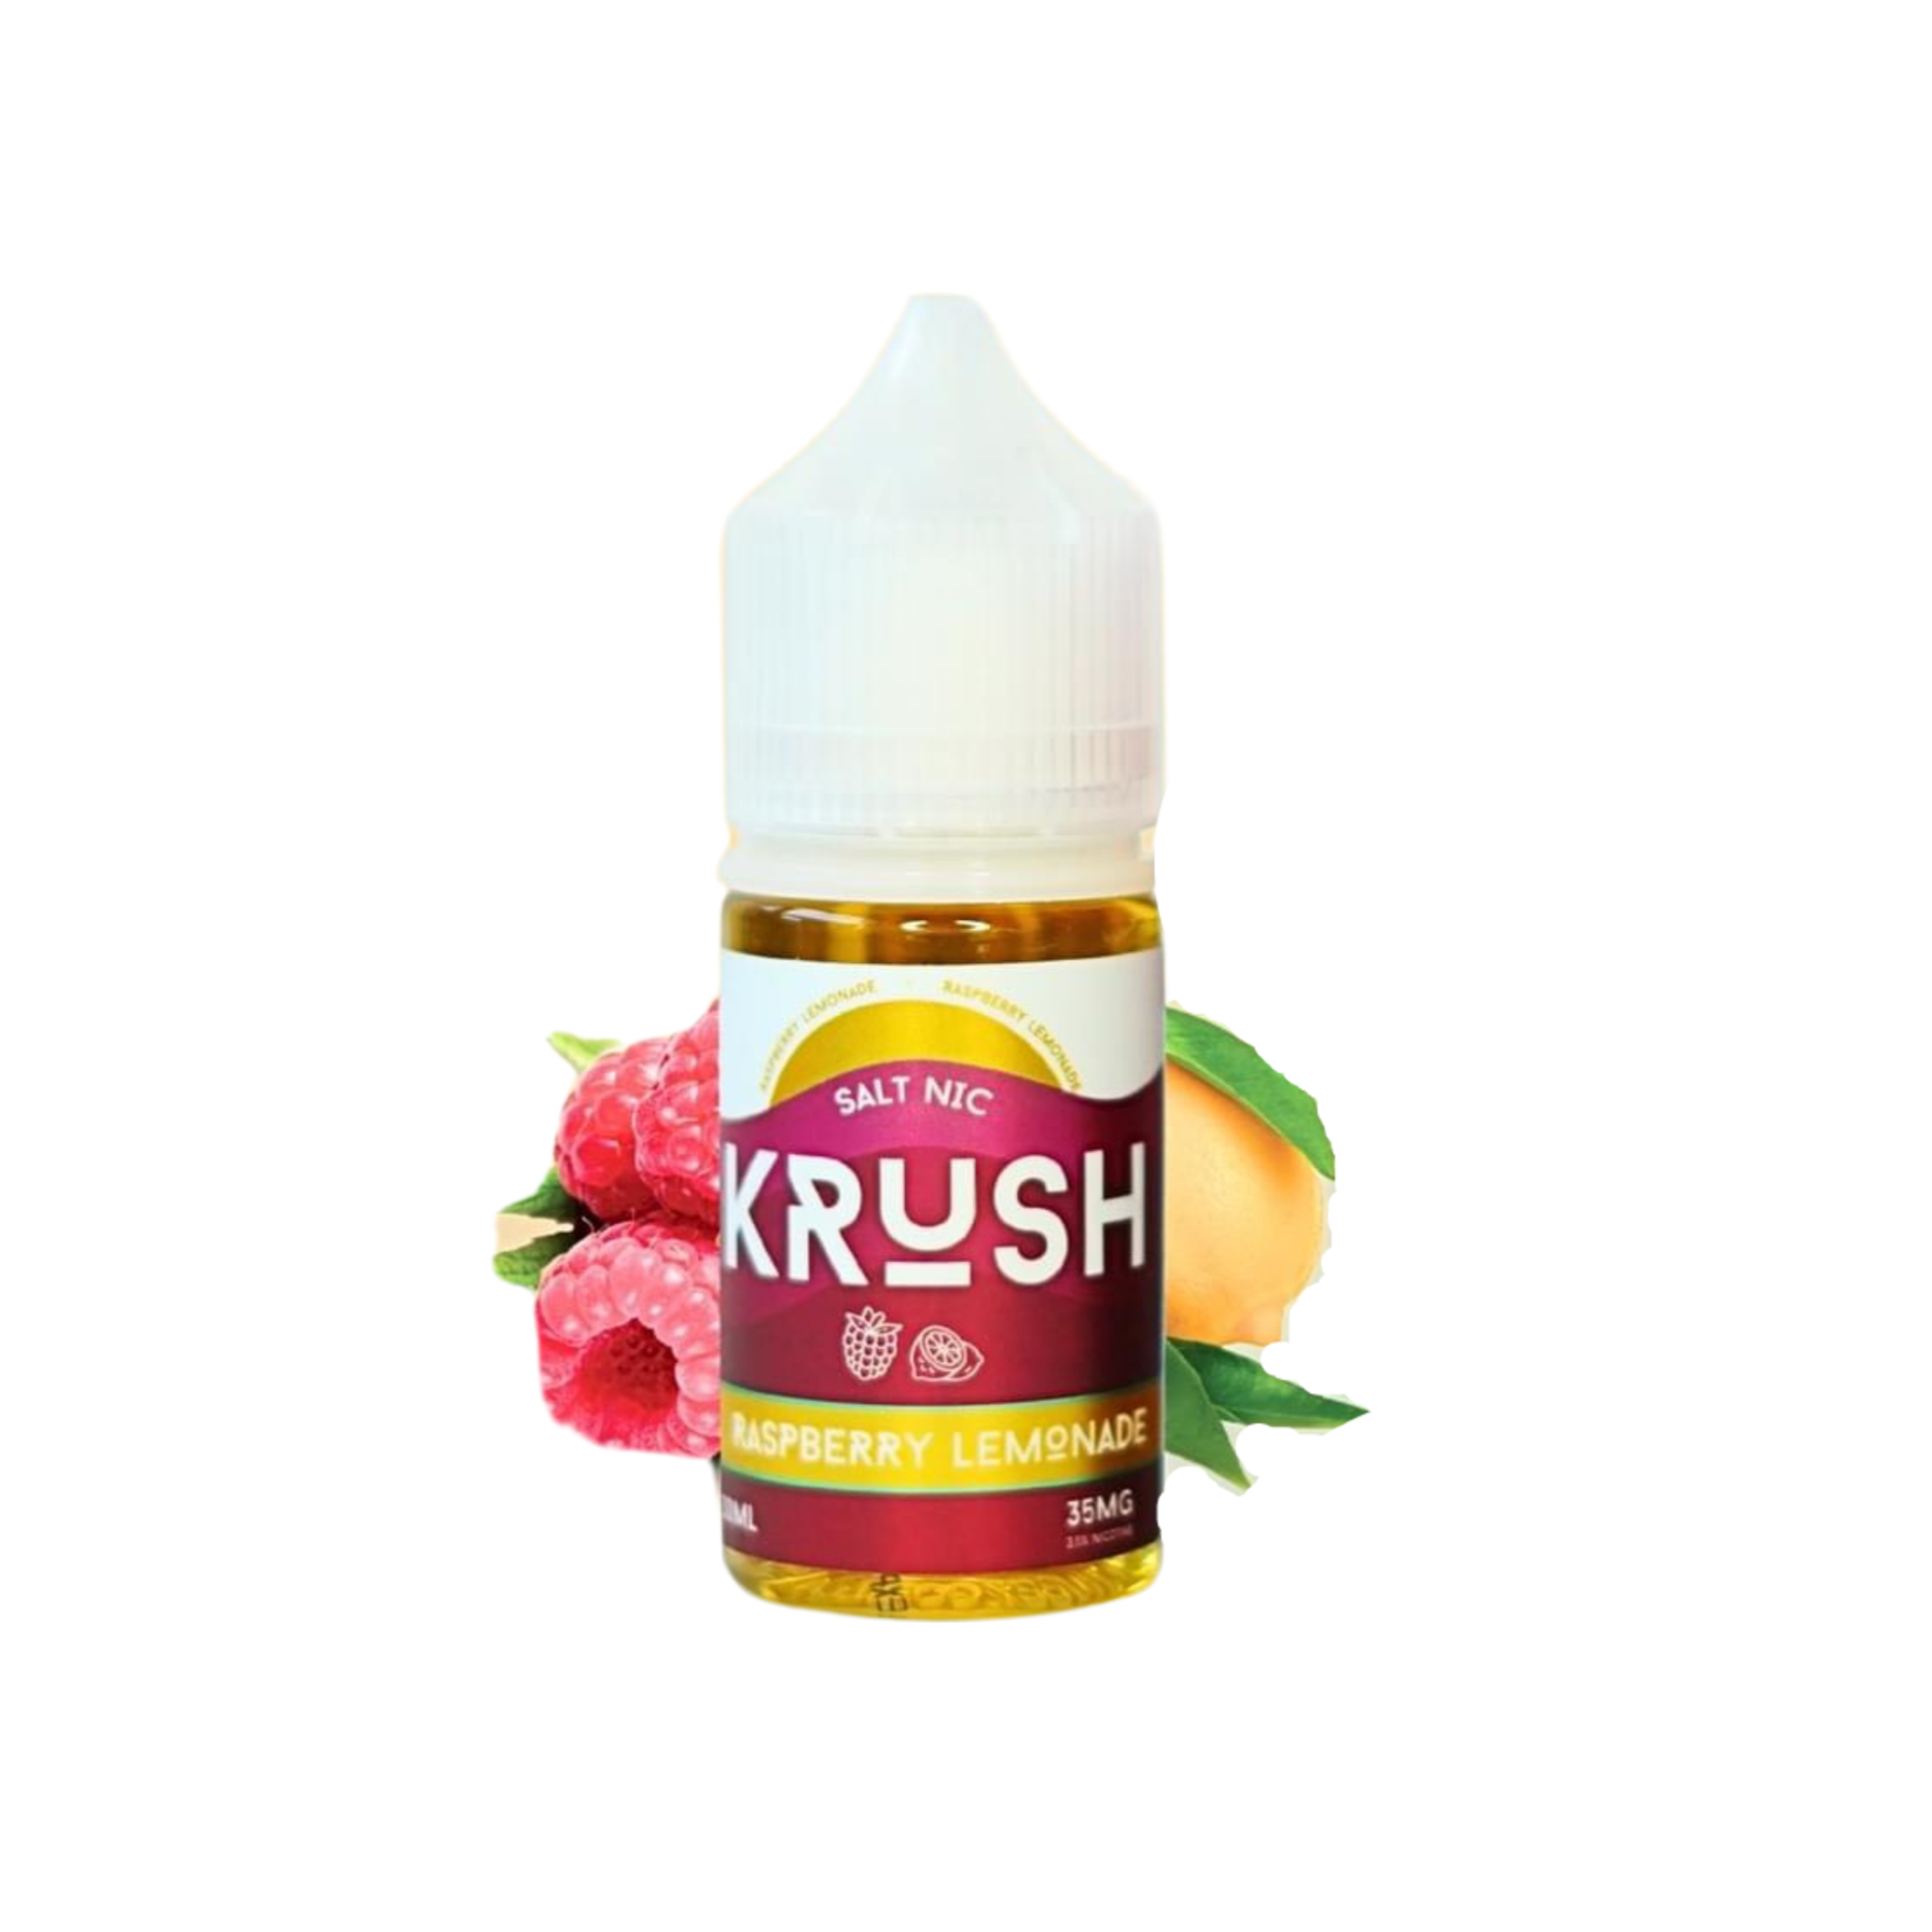 Krush Raspberry Lemonade - Nước Chanh Mâm Xôi